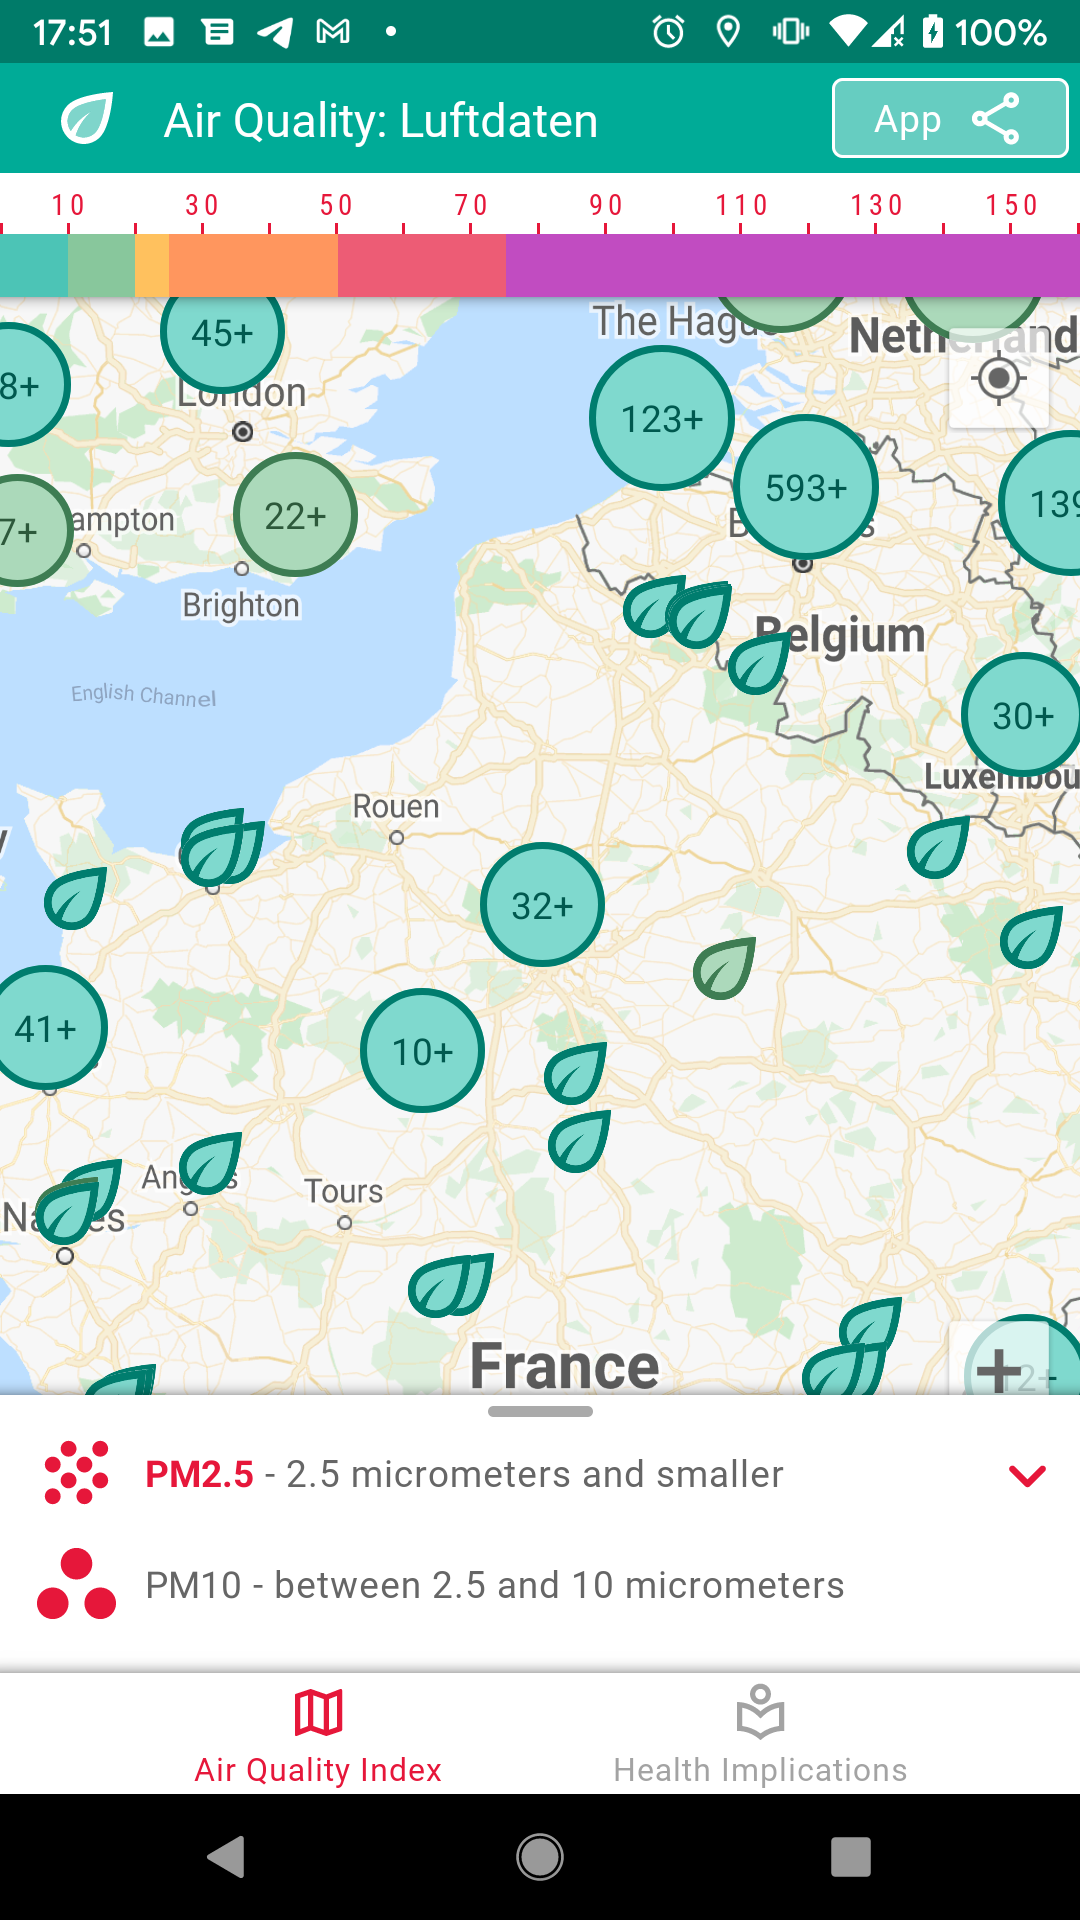 Luftdaten: Air Quality